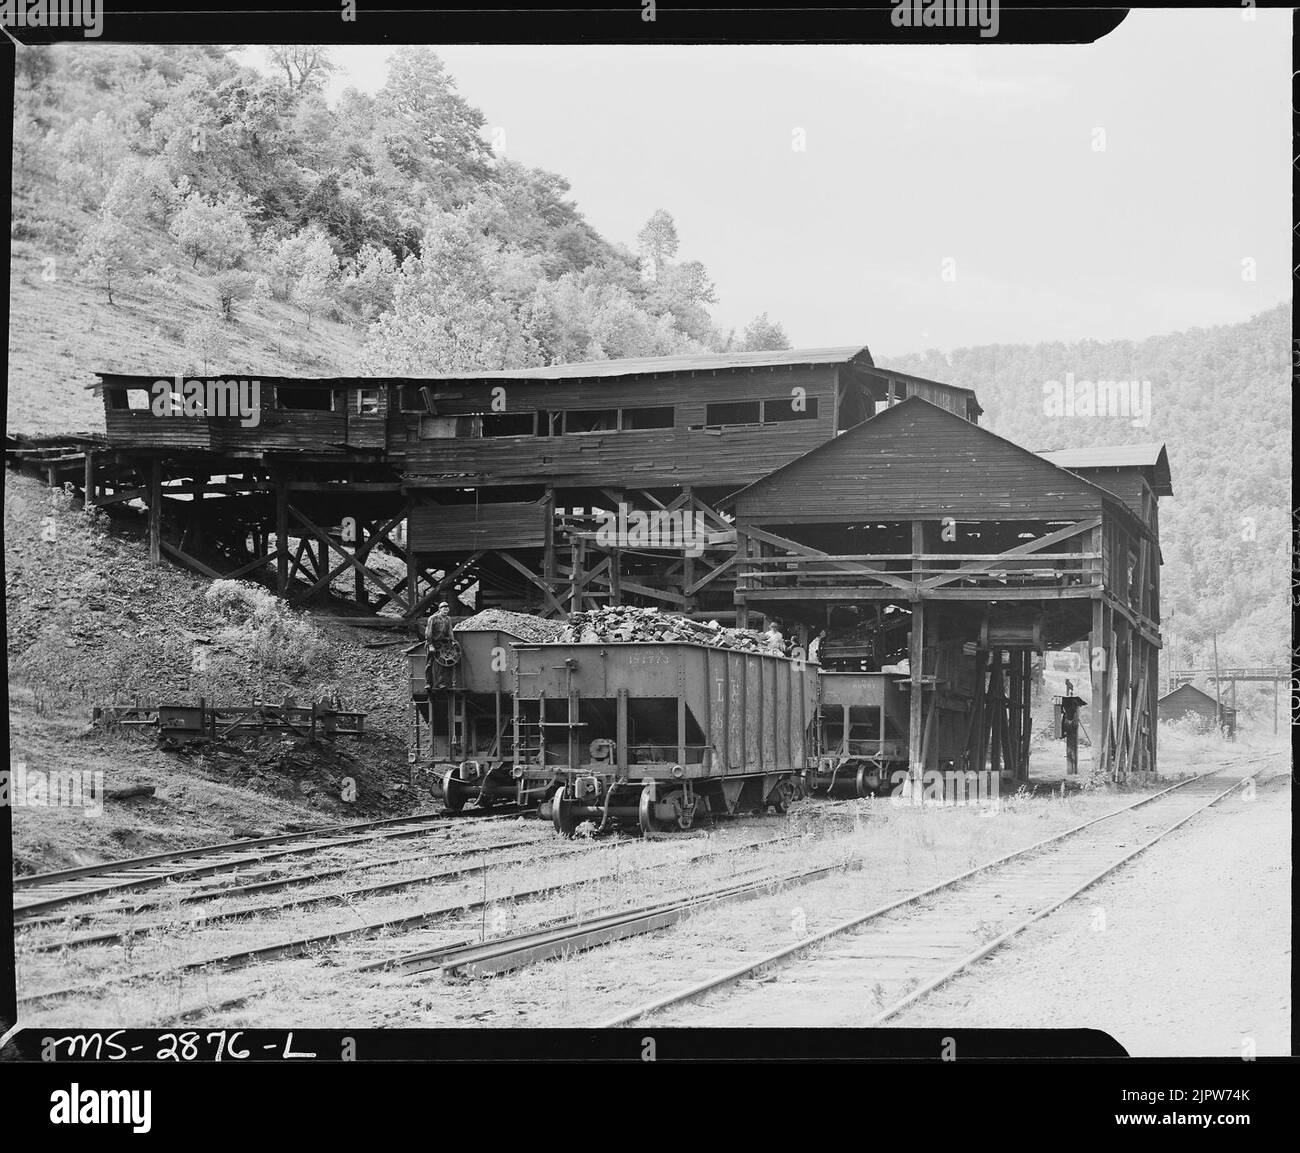 The tipple. P V & K Coal Company, Clover Gap Mine, Lejunior, Harlan County, Kentucky. Stock Photo